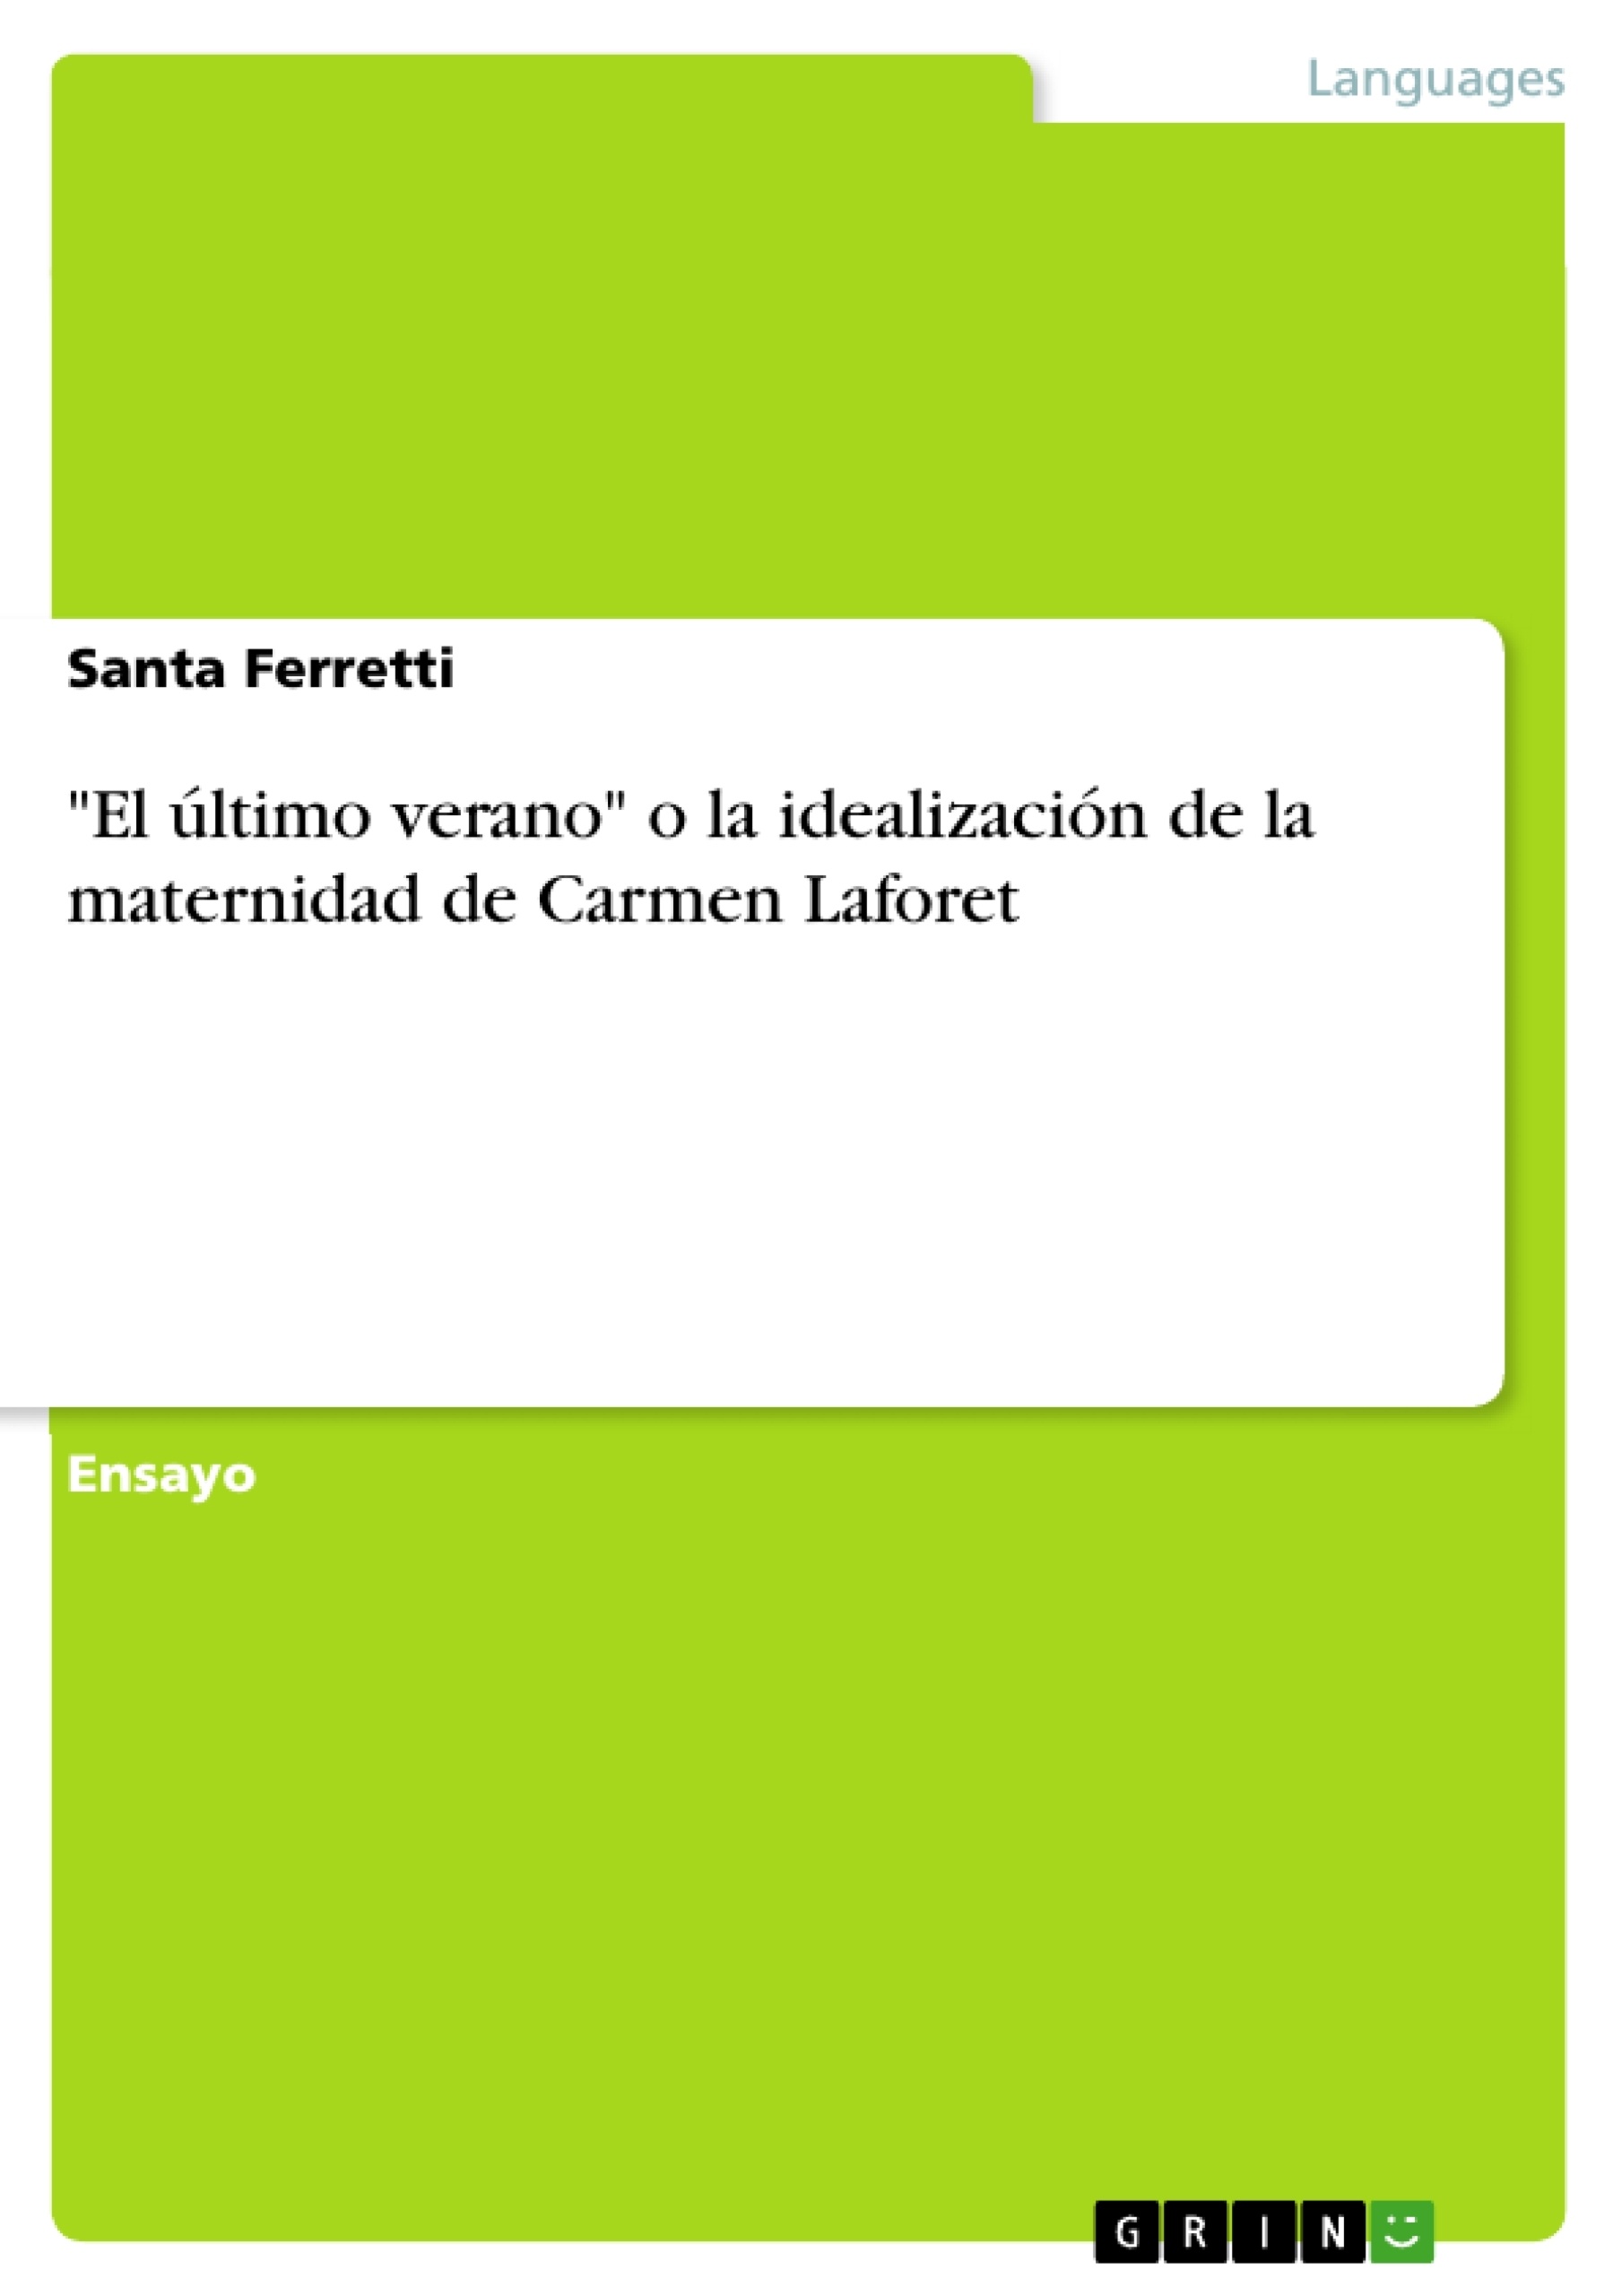 Título: "El último verano" o la idealización de la maternidad de Carmen Laforet